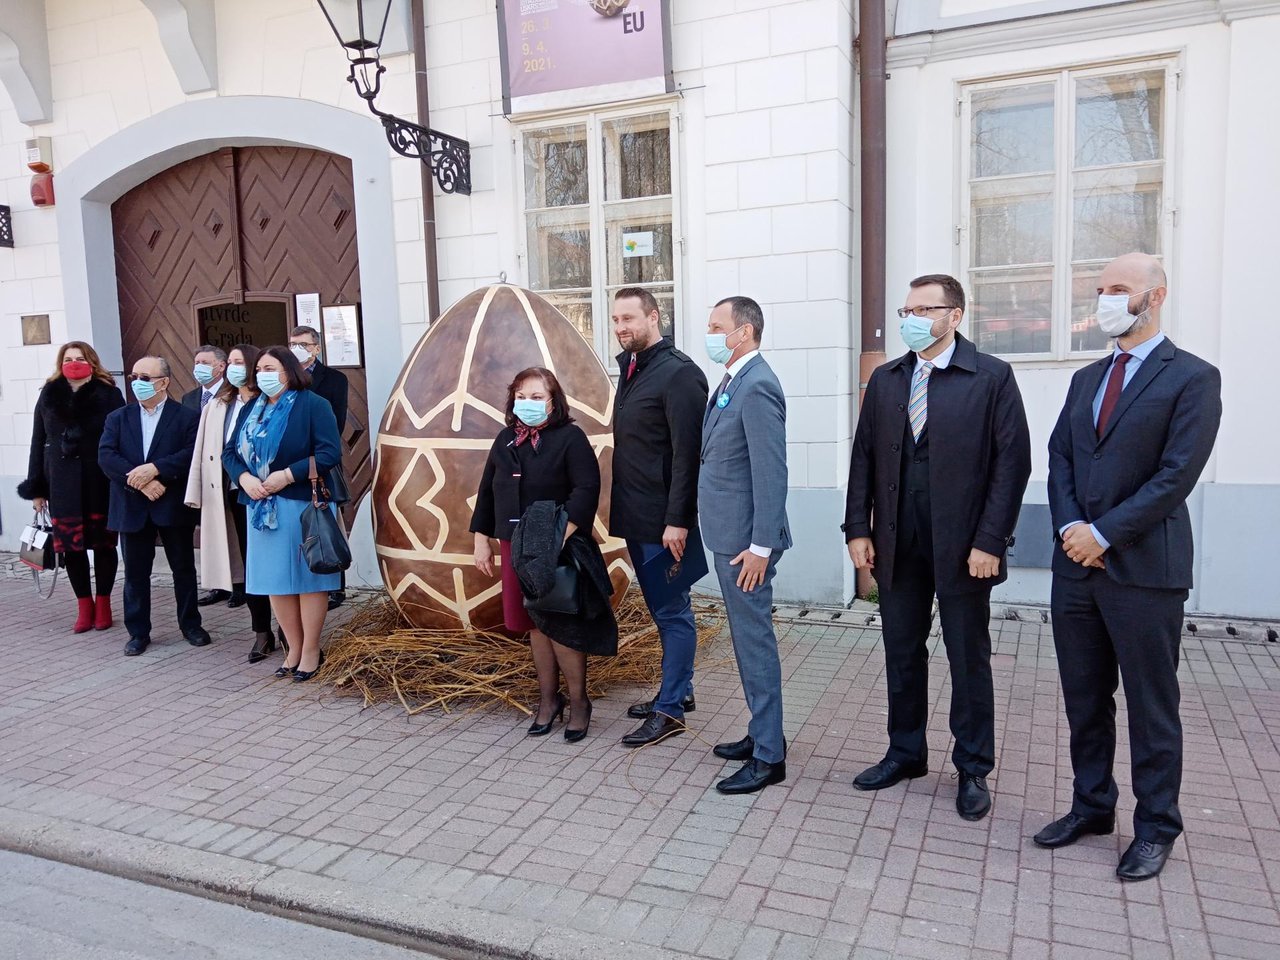 Fotografija: Otvorenju izložbe Uskrs u EU prisustvovali su veleposlanici i predstavnici osam zemalja članica EU/ Foto: Deni Marčinković